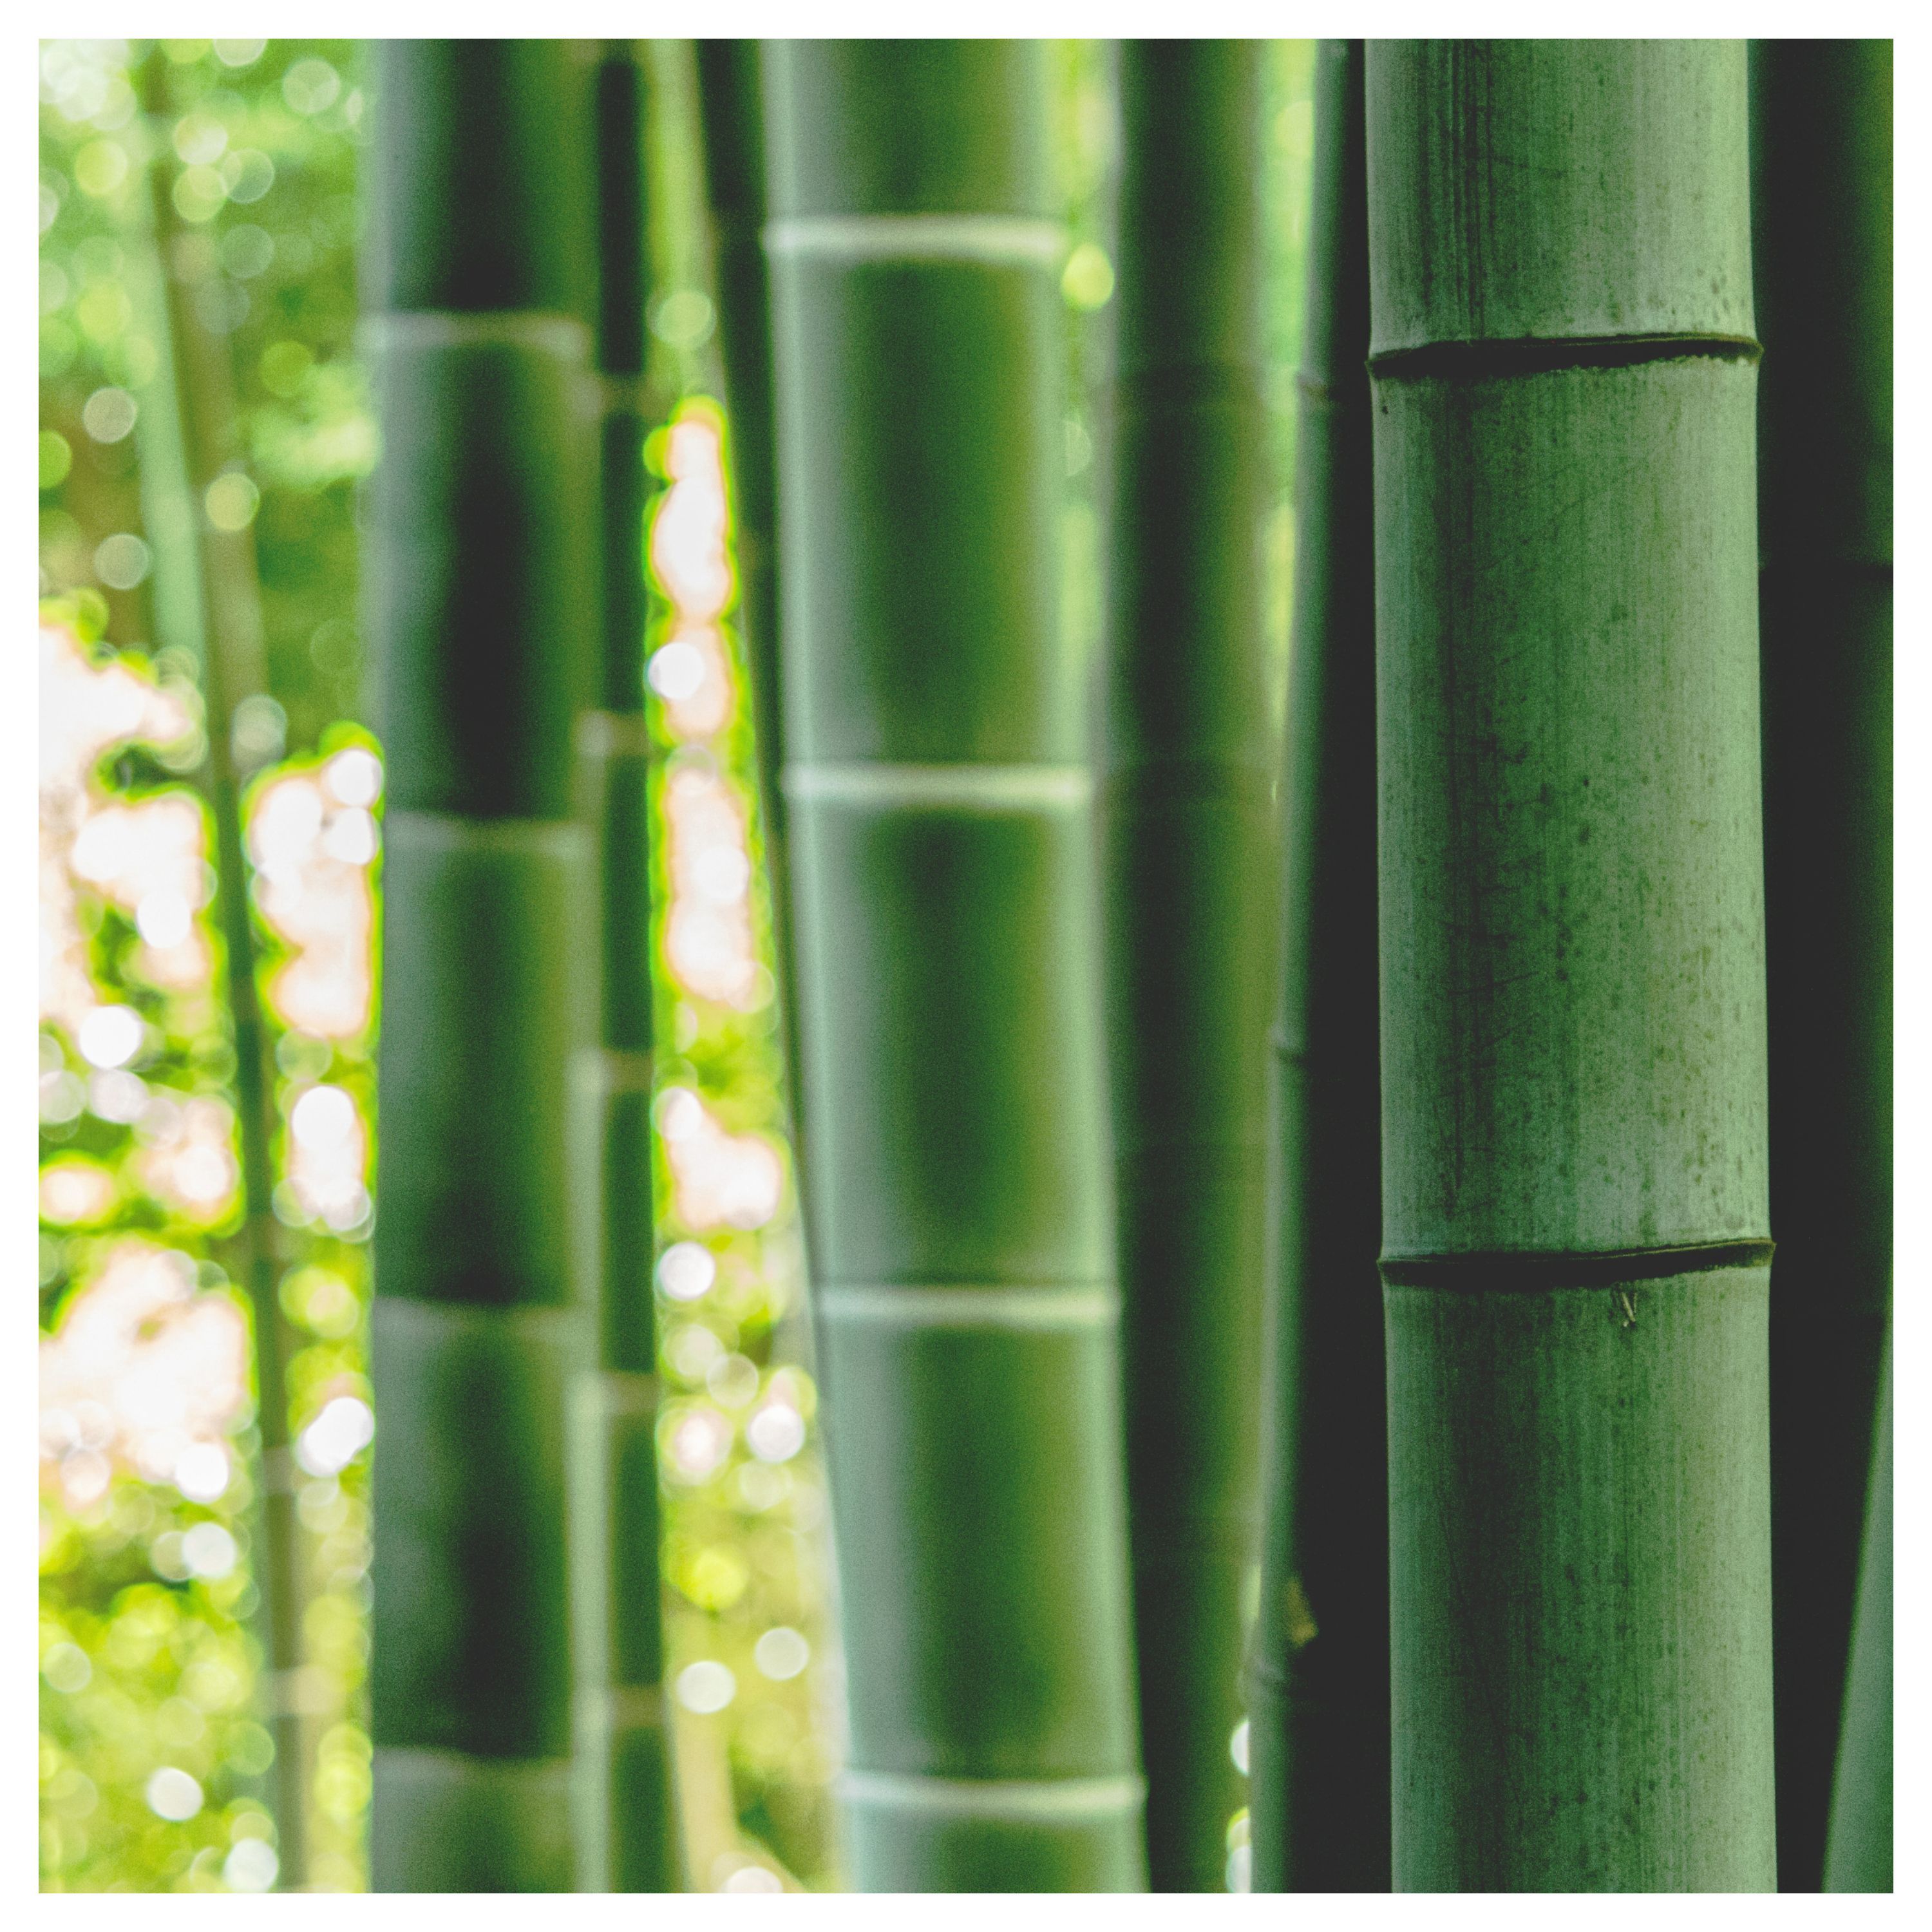 Grandes tiges de bambou vertes